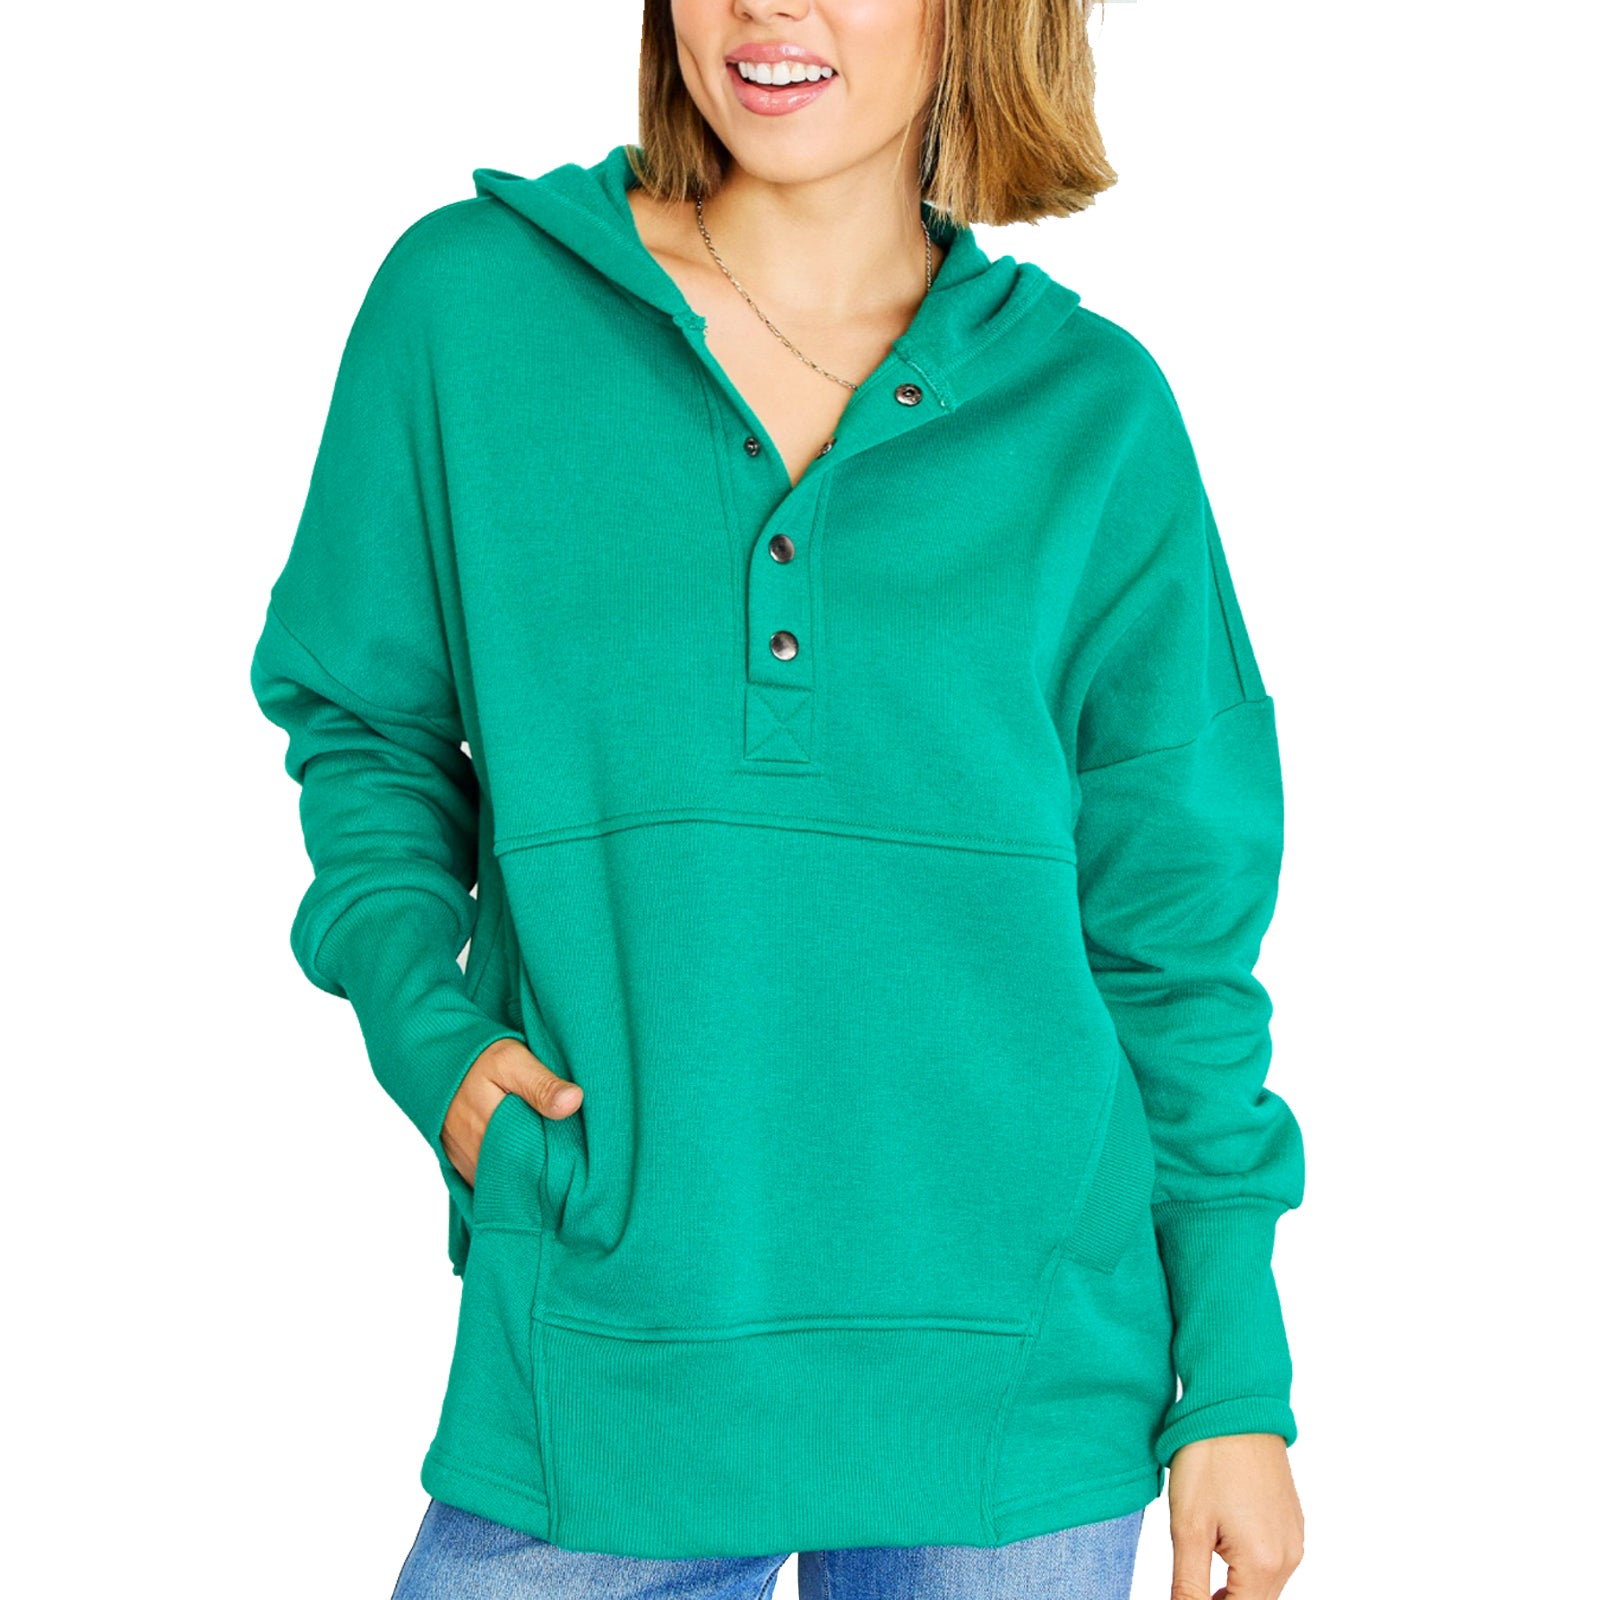 Women's Green Oversized Pullover Hoodie Sweatshirt